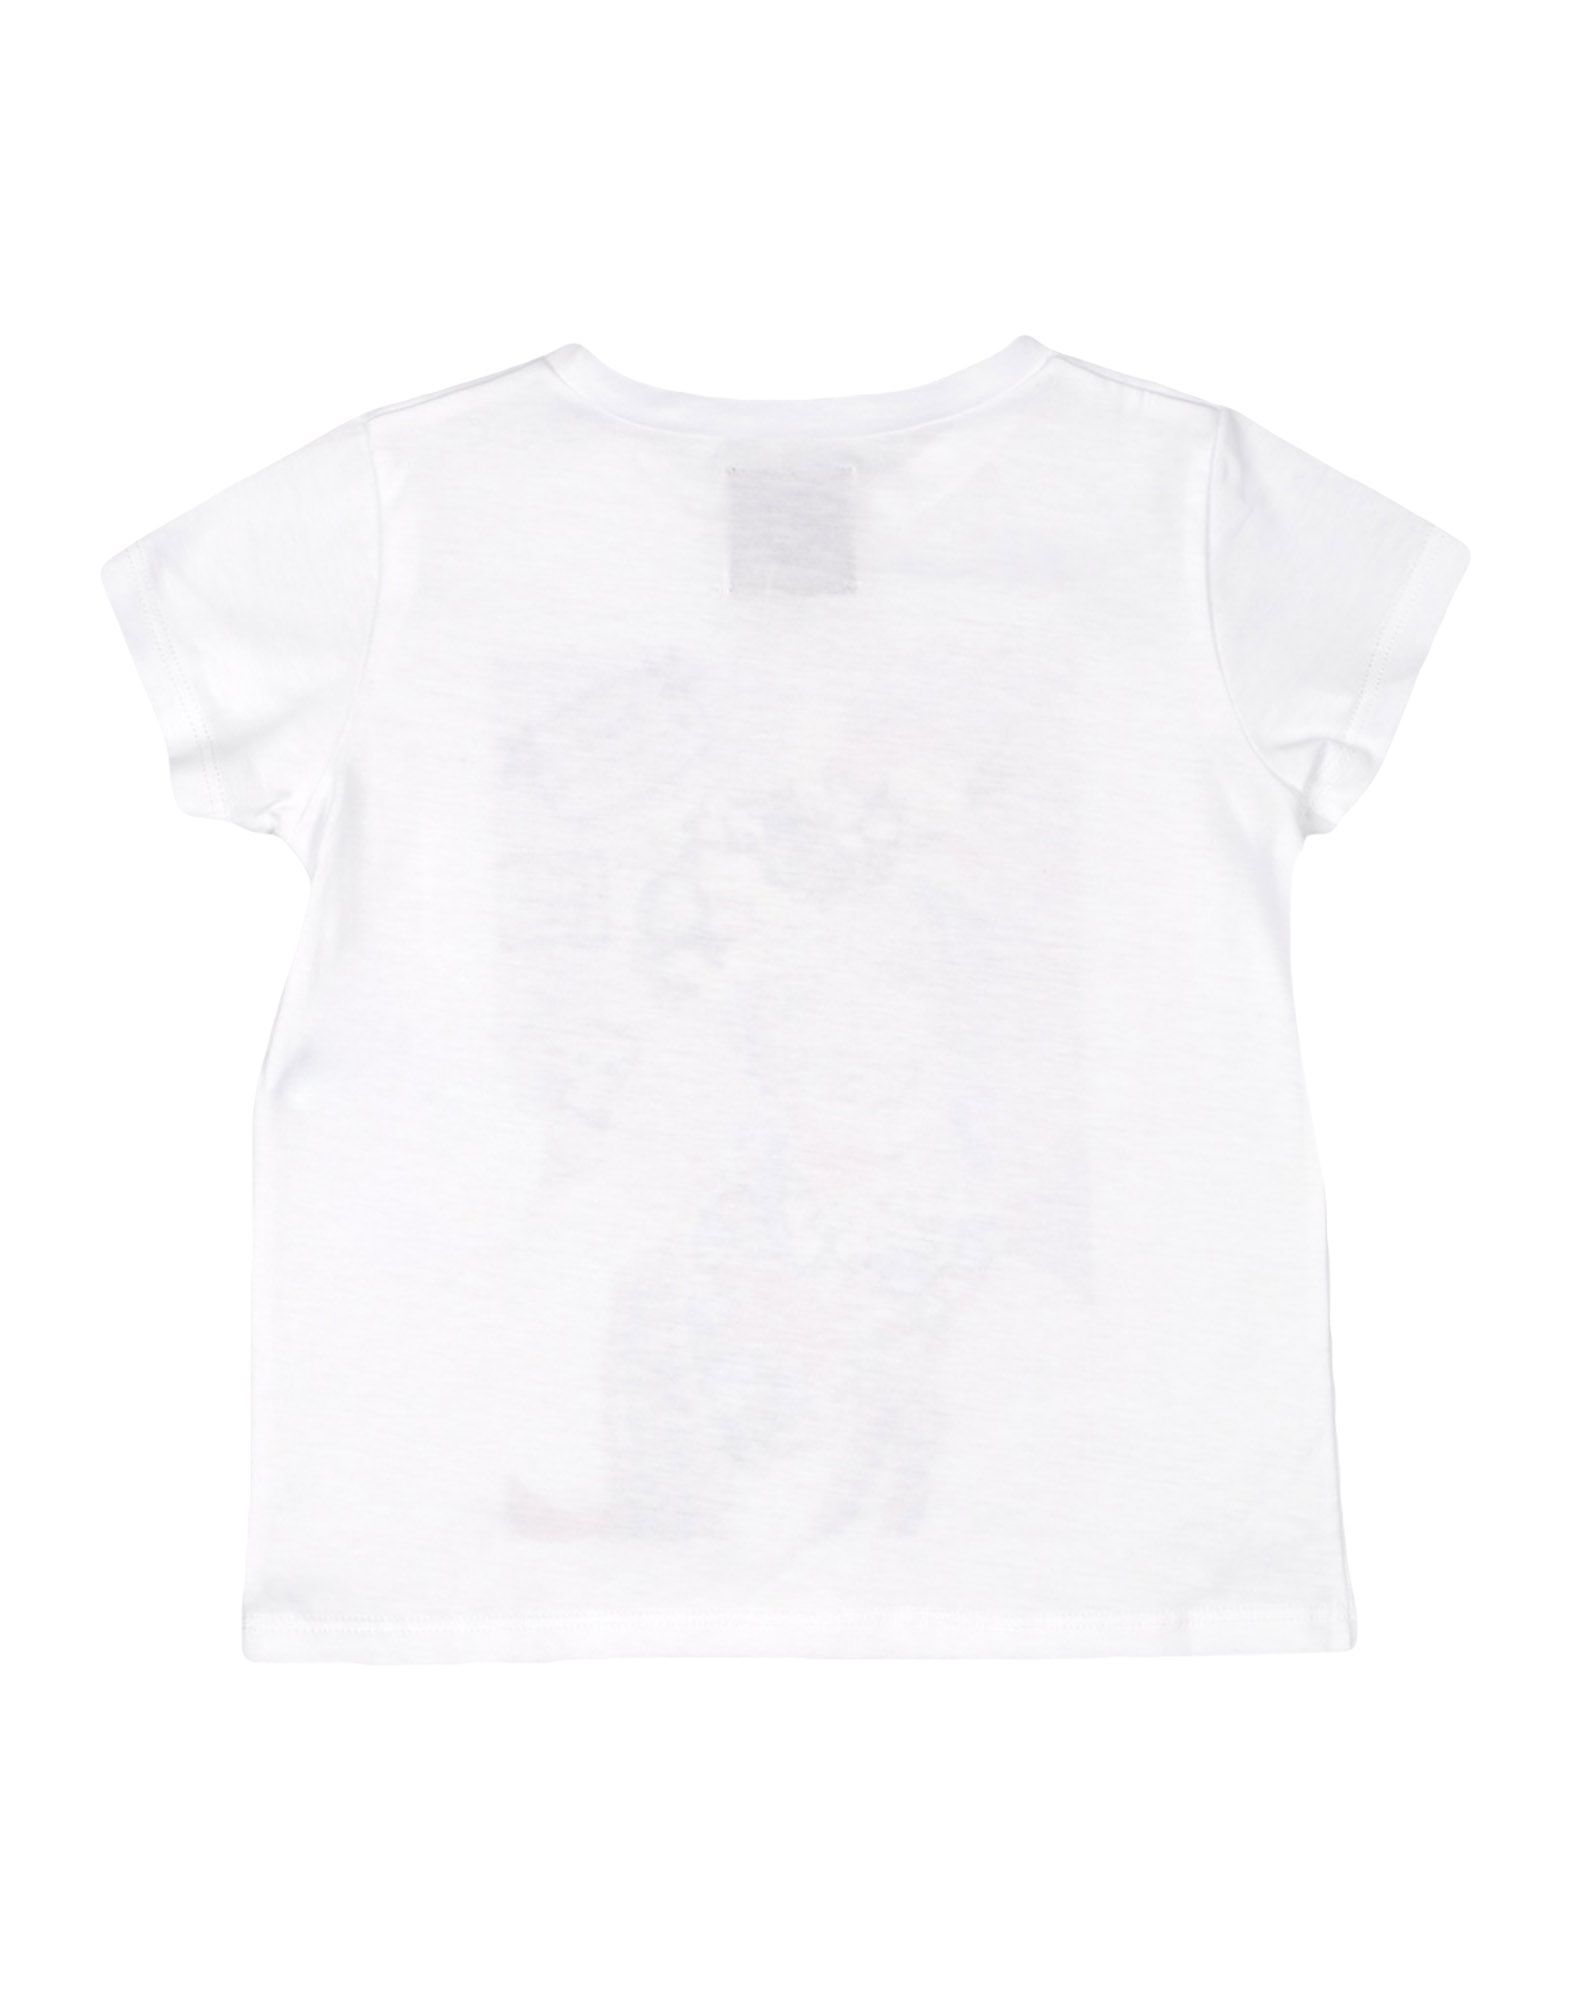 Stella Jean Girl T-shirts White Cotton